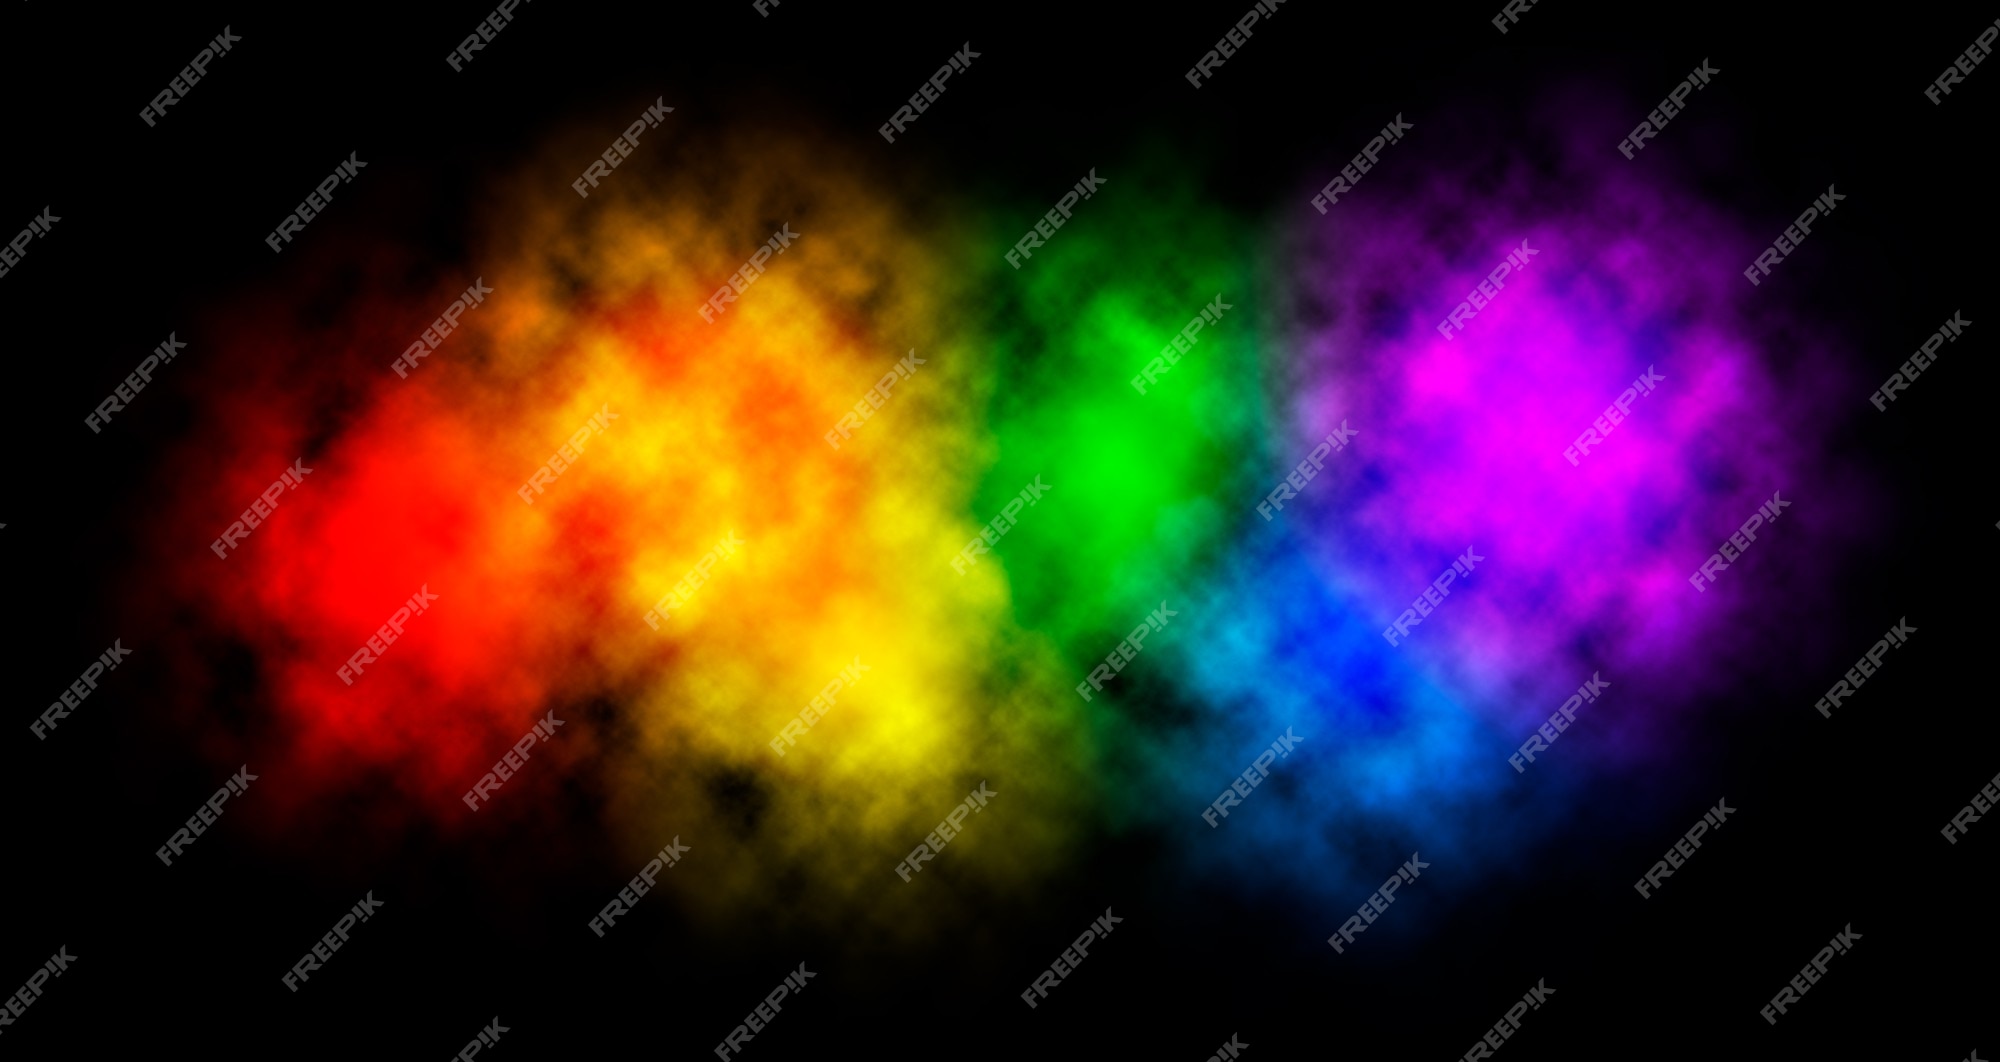 Rainbow paint: Điều gì sẽ xảy ra khi sắc màu cầu vồng được phá vỡ và tràn đầy trên bức hình? Sự pha trộn và kết hợp tuyệt vời sẽ khiến bạn thích thú và hạnh phúc.